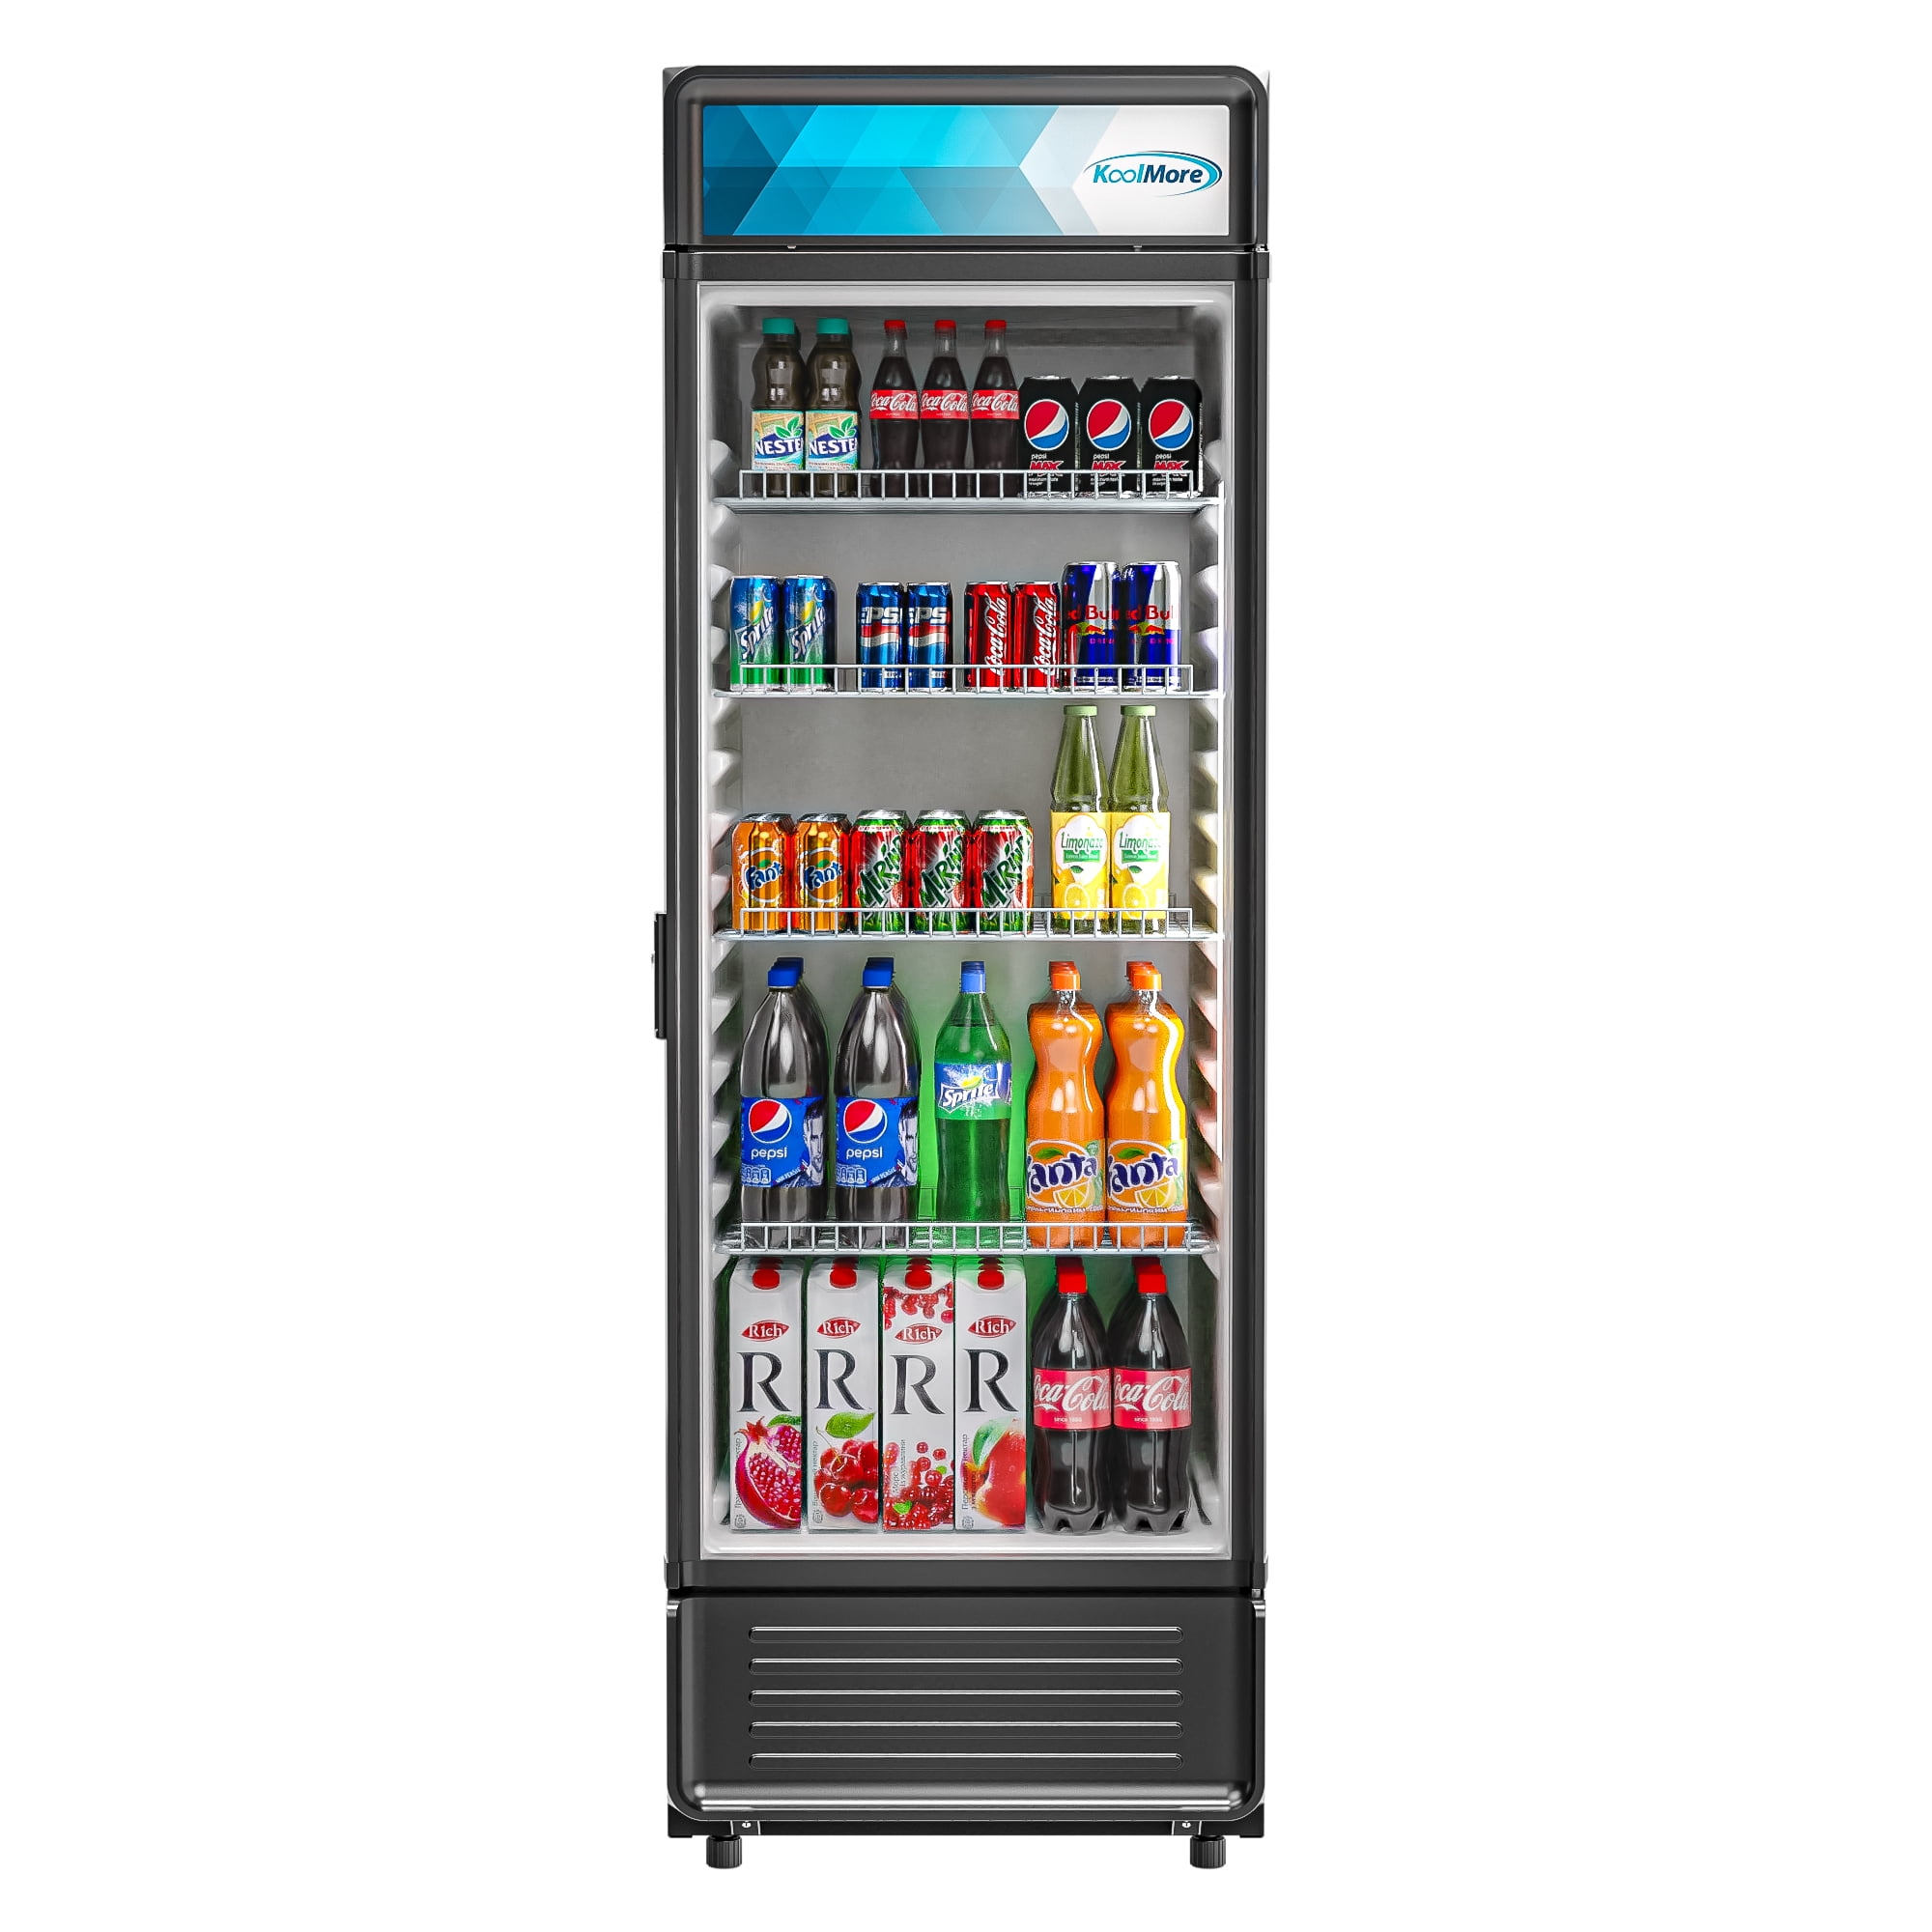 2 Glass door refrigerator commercial reach in merchandiser Cooler Display Store 